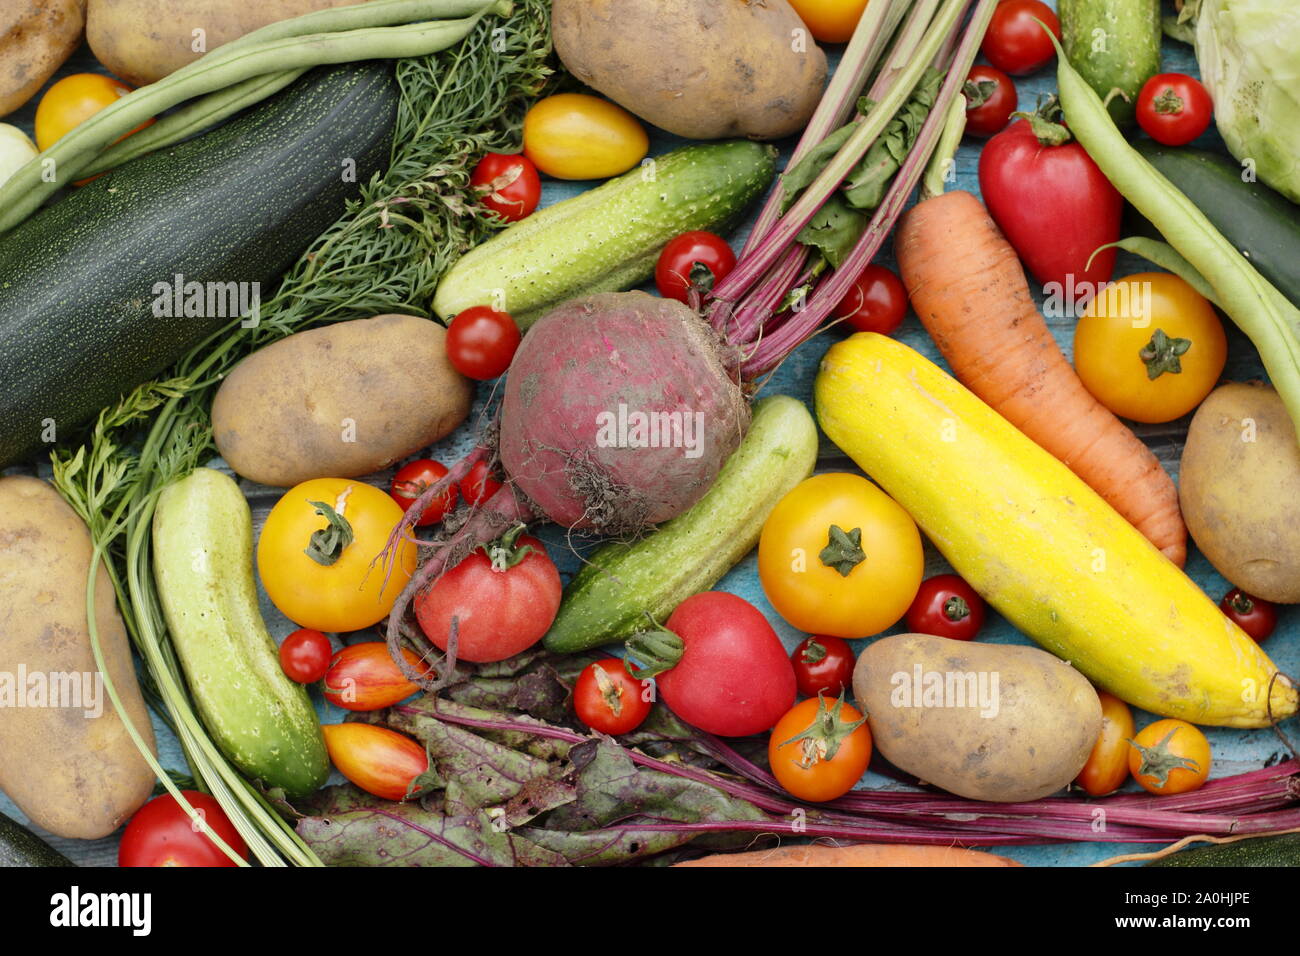 Appena raccolto homegrown verdura biologica inclusa la zucchina, fagiolini, barbabietole, carote, patate, pomodori, cetrioli e il cavolo. Regno Unito Foto Stock